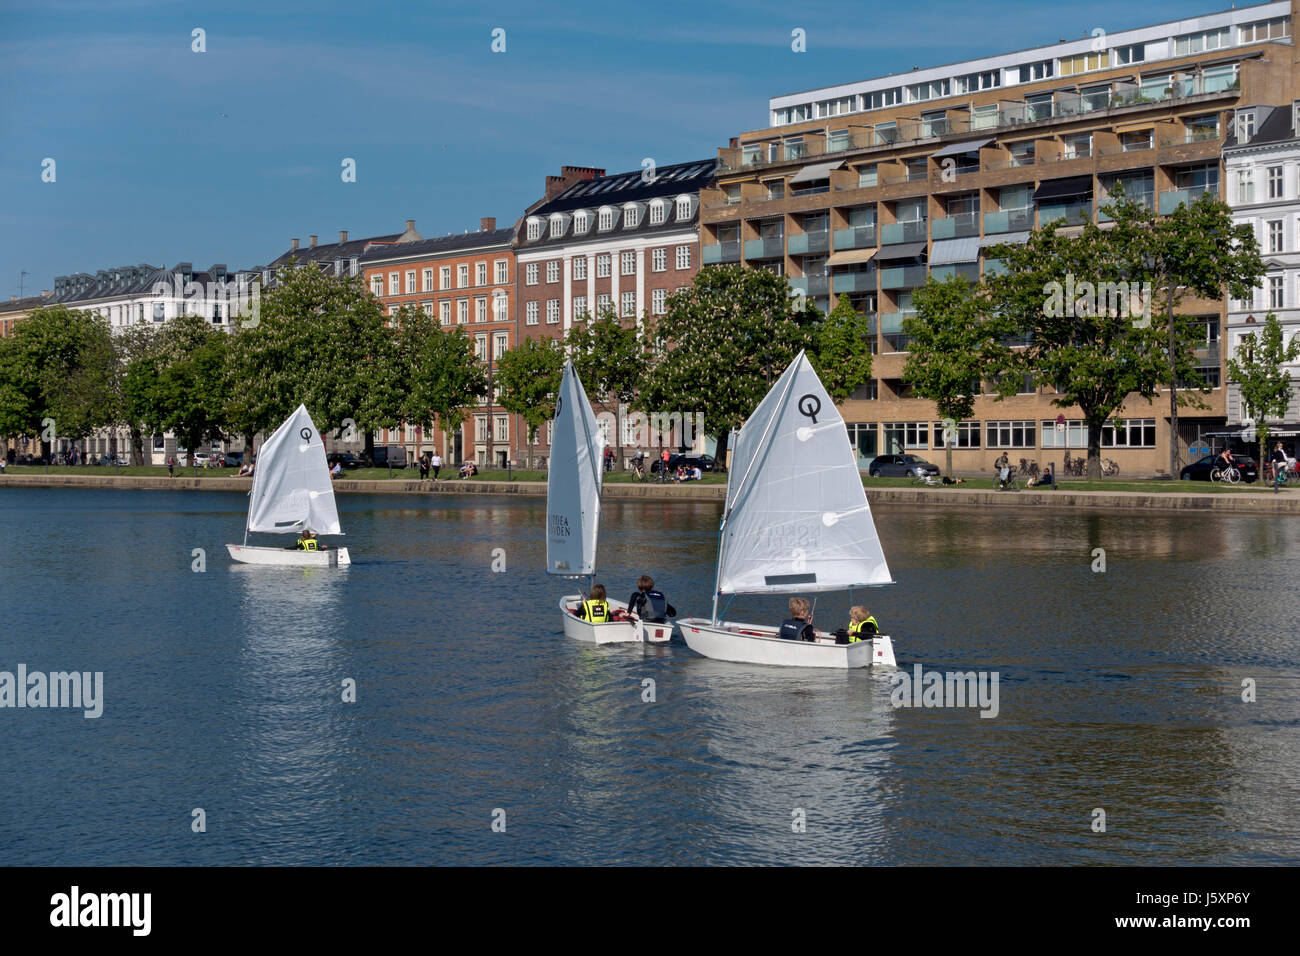 Junior marinai di optimist derive sul lago Peblinge nel centro di Copenhagen in un assolato pomeriggio di tarda primavera inizio estate. Foto Stock